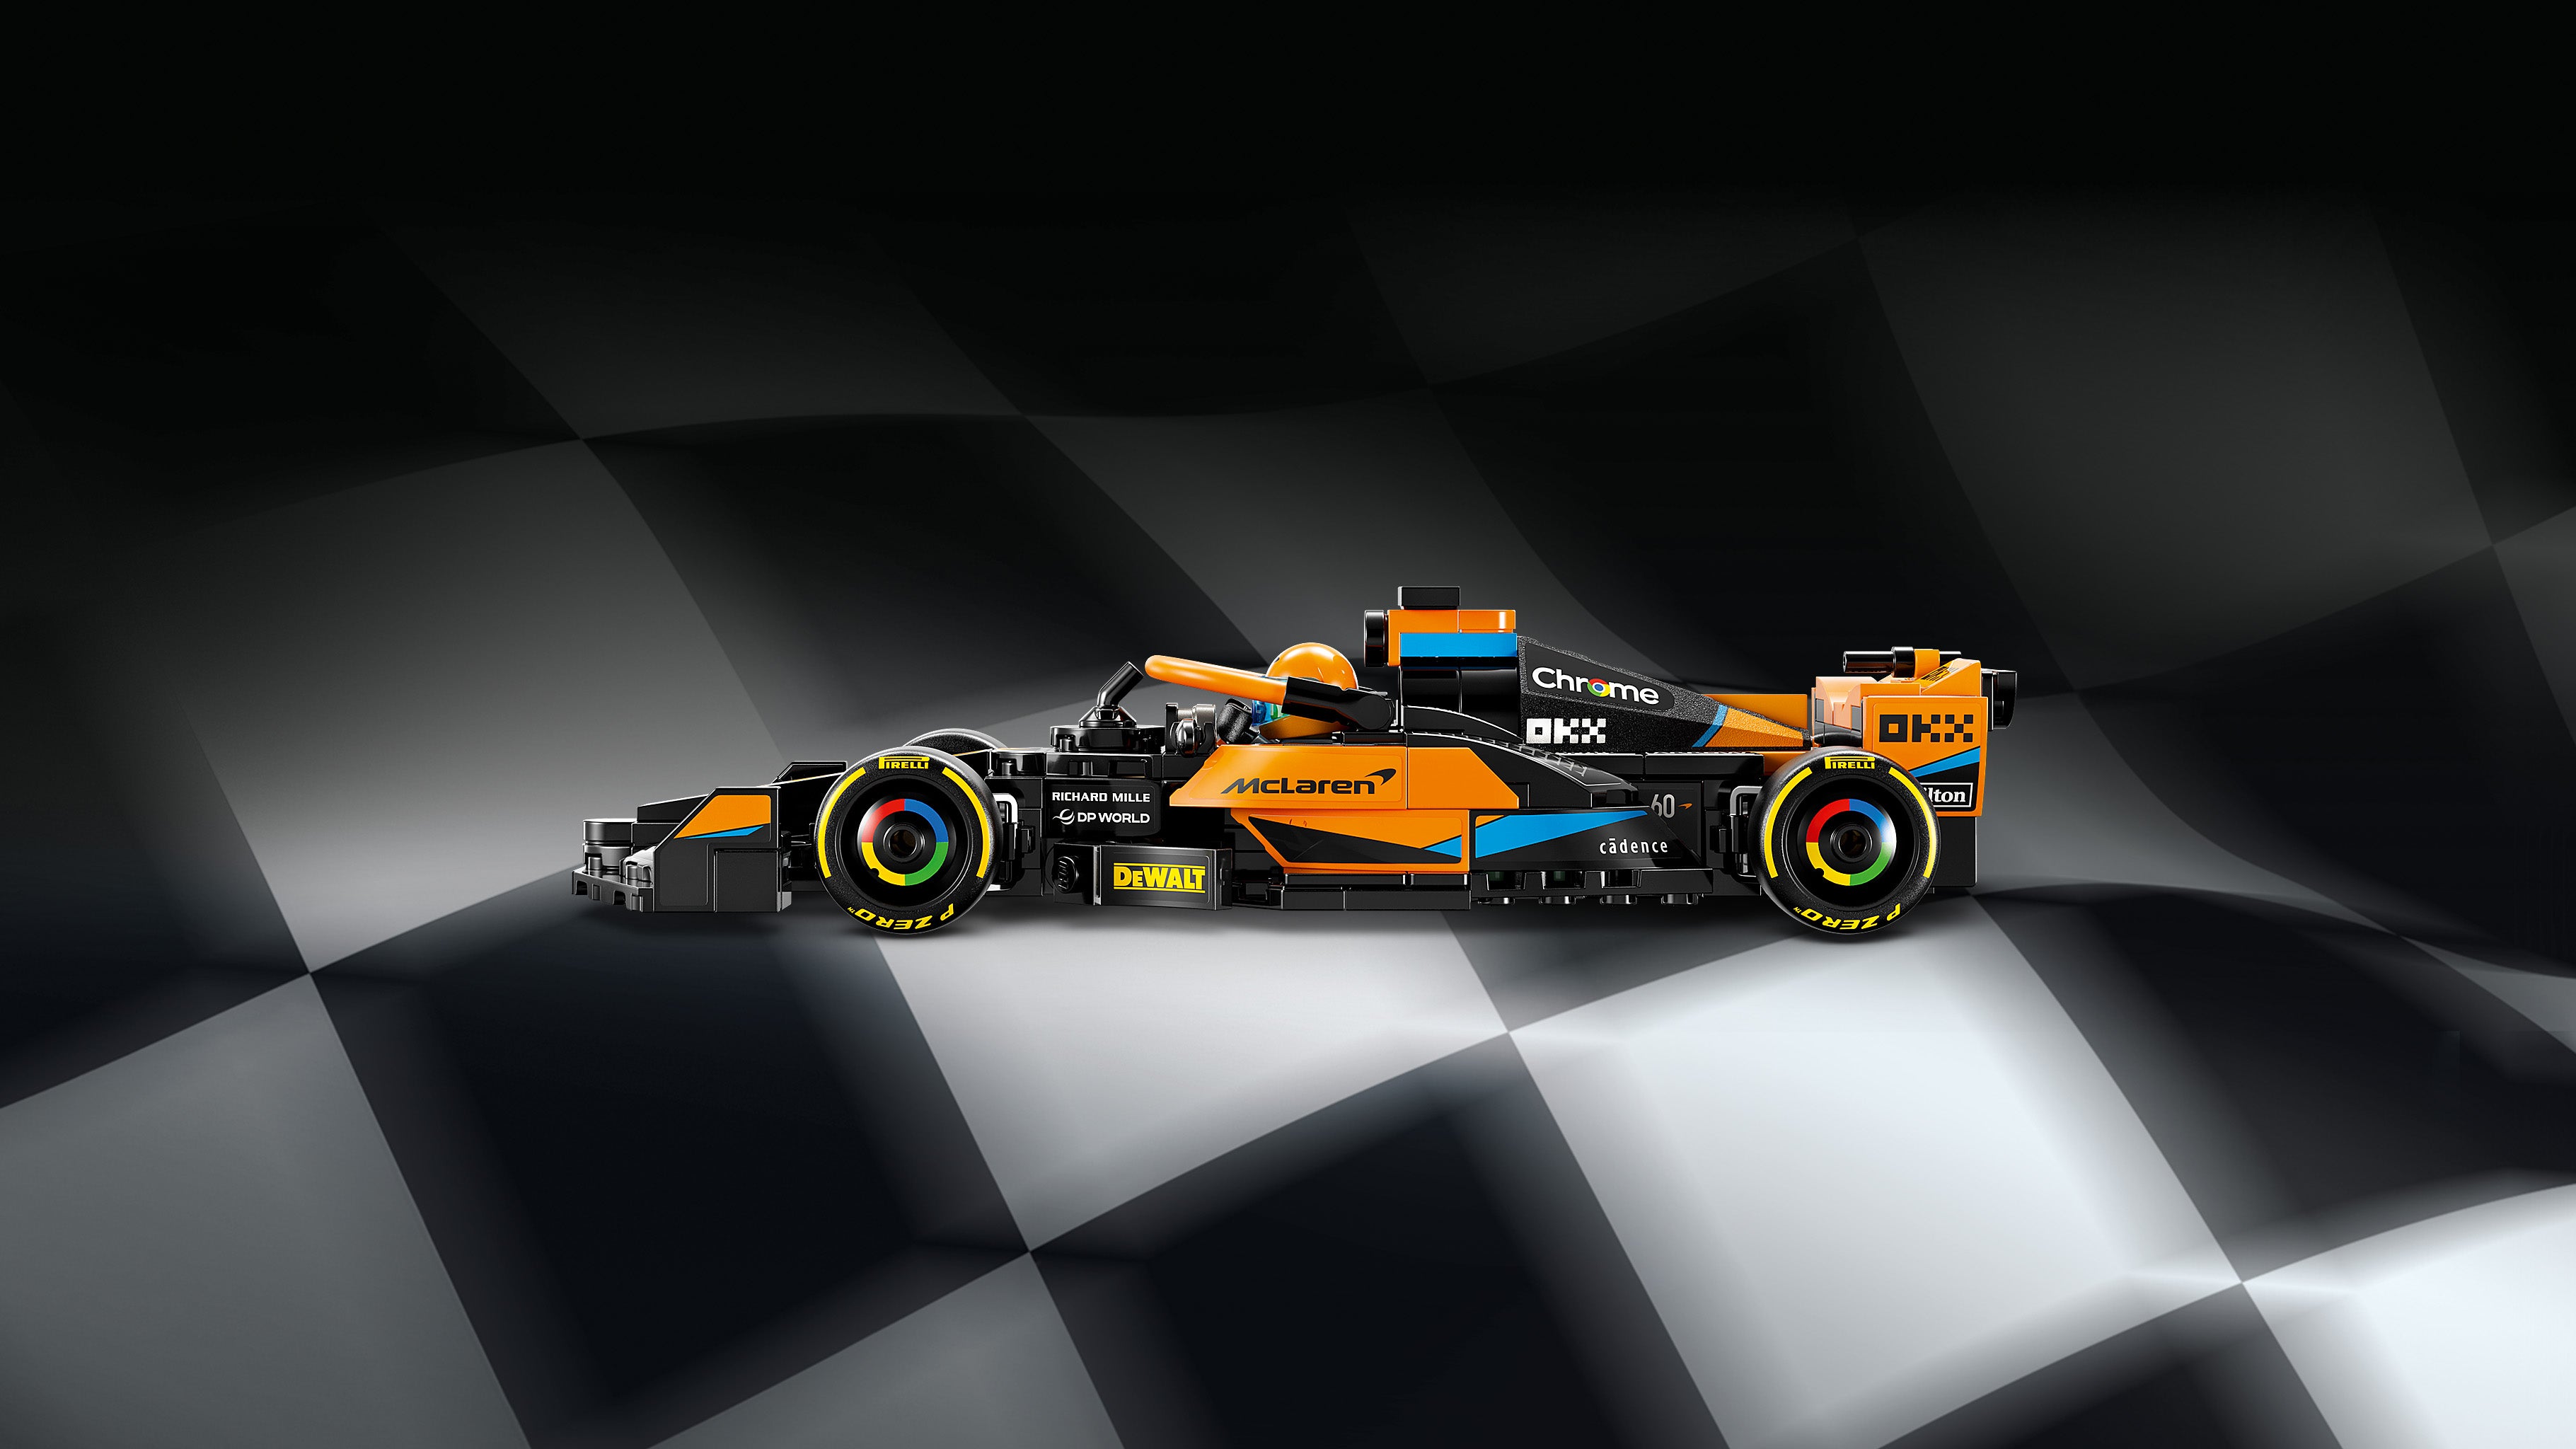 Lego 76919 2023 McLaren Formula 1 Race Car